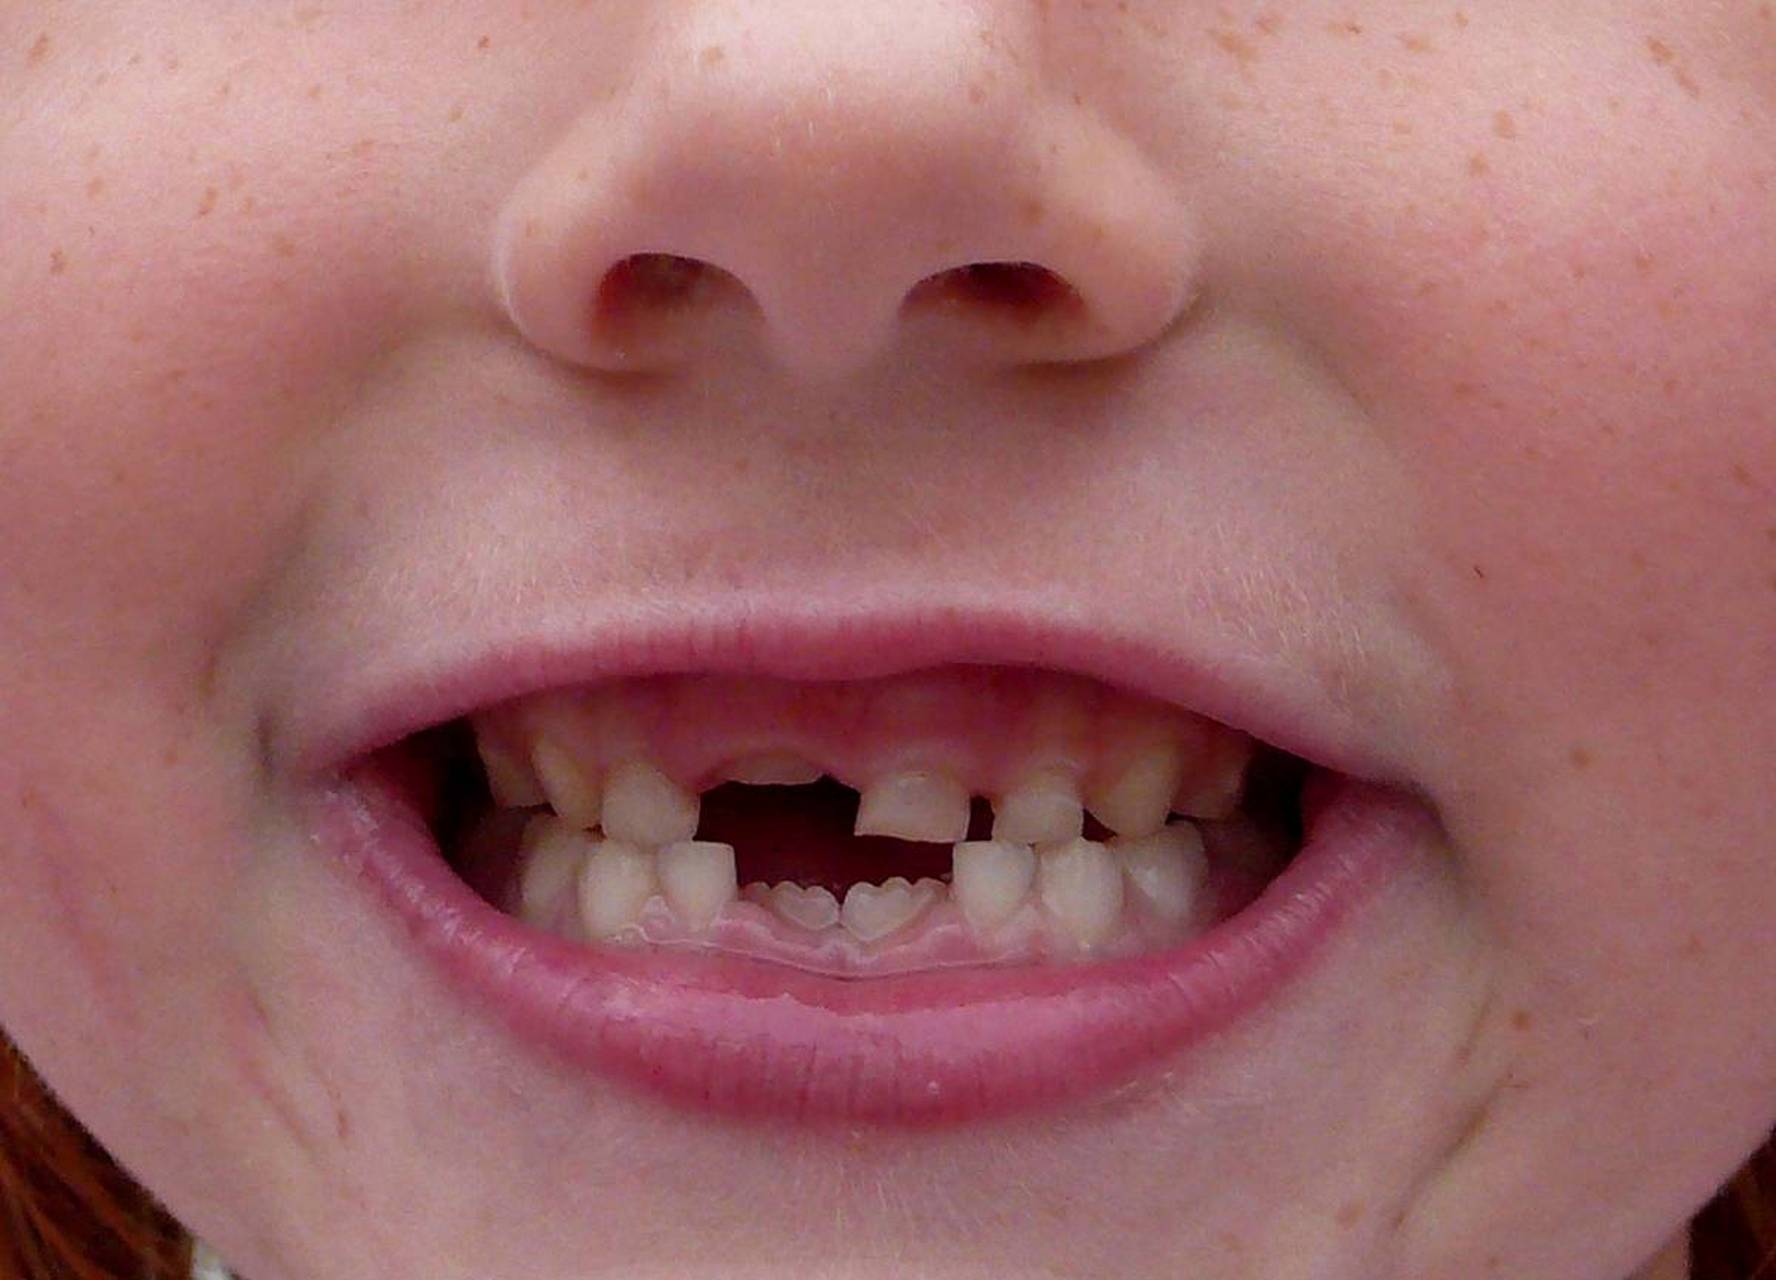 牙龈出现红肿疼痛的症状,可能与牙周炎,根尖周炎等疾病有关